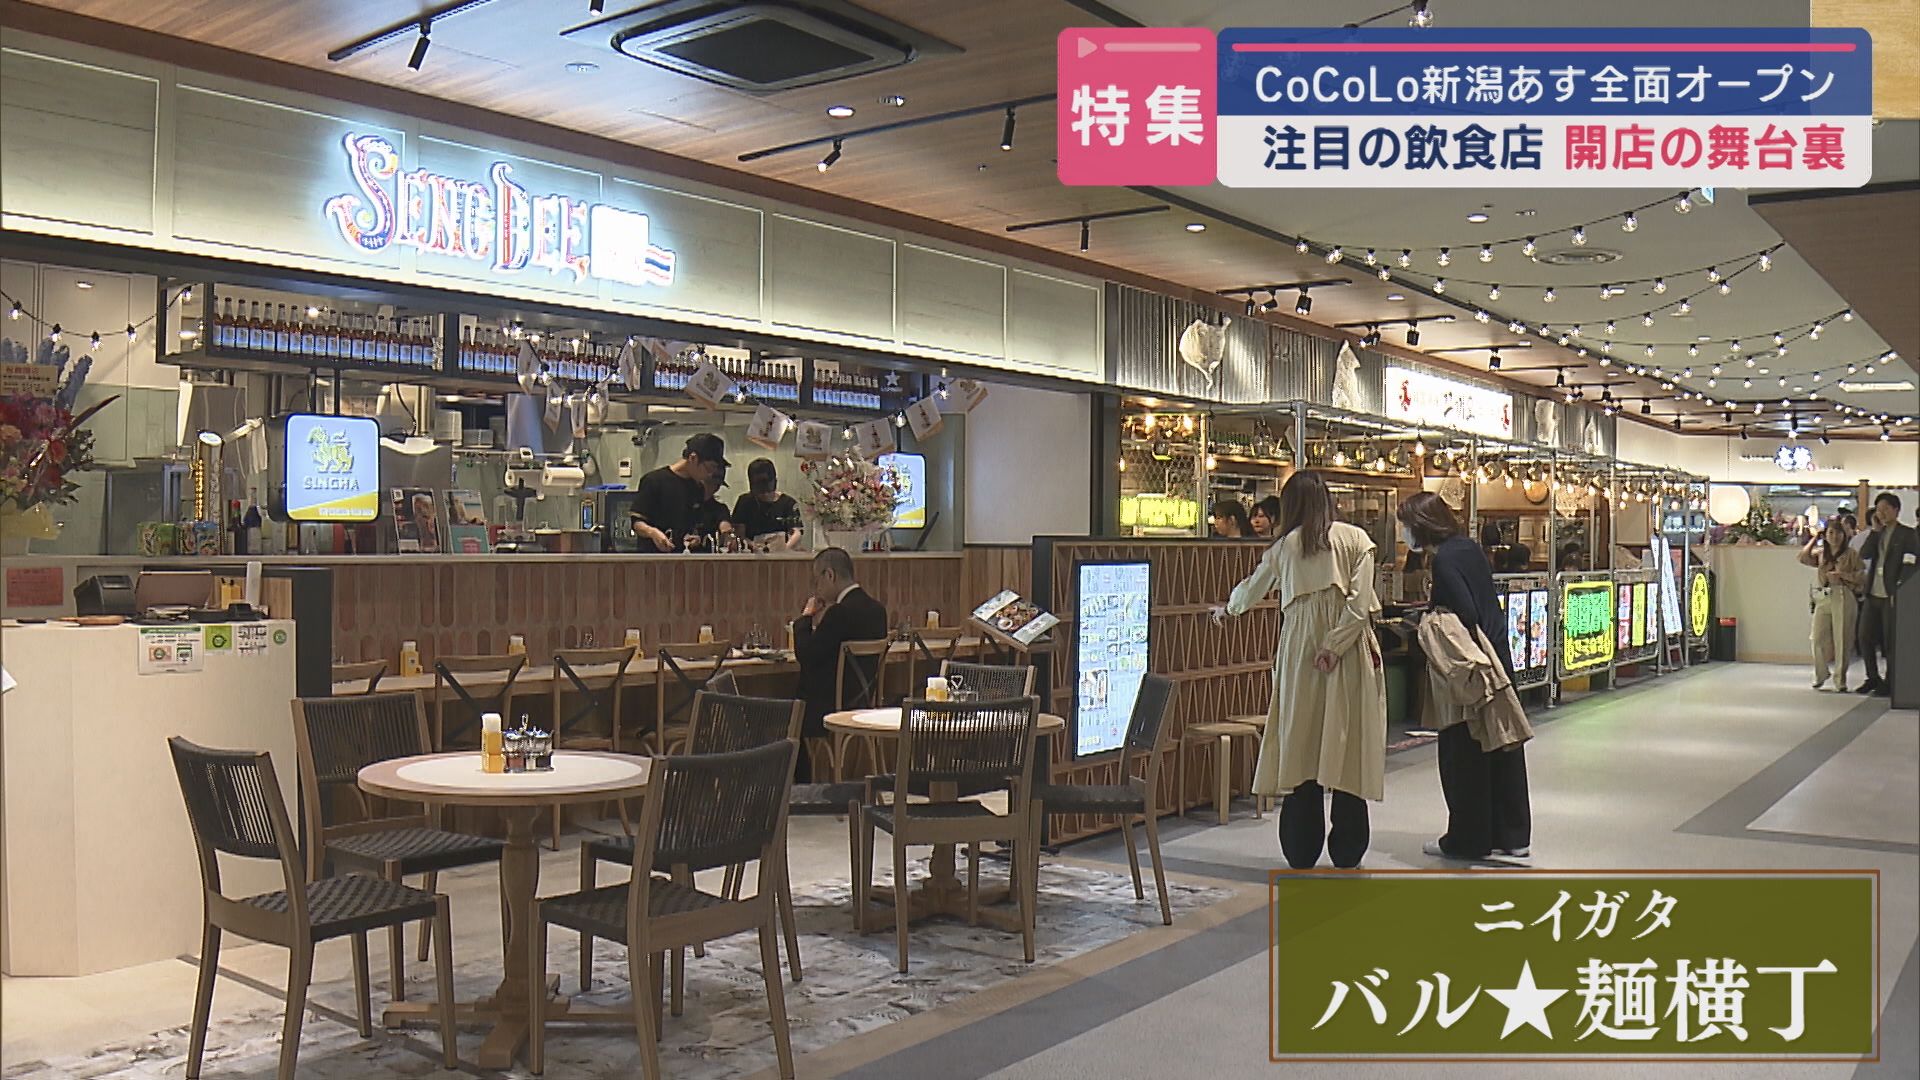 【特集】CoCoLo新潟グランドオープンに向けた飲食フロア店舗の舞台裏【新潟】